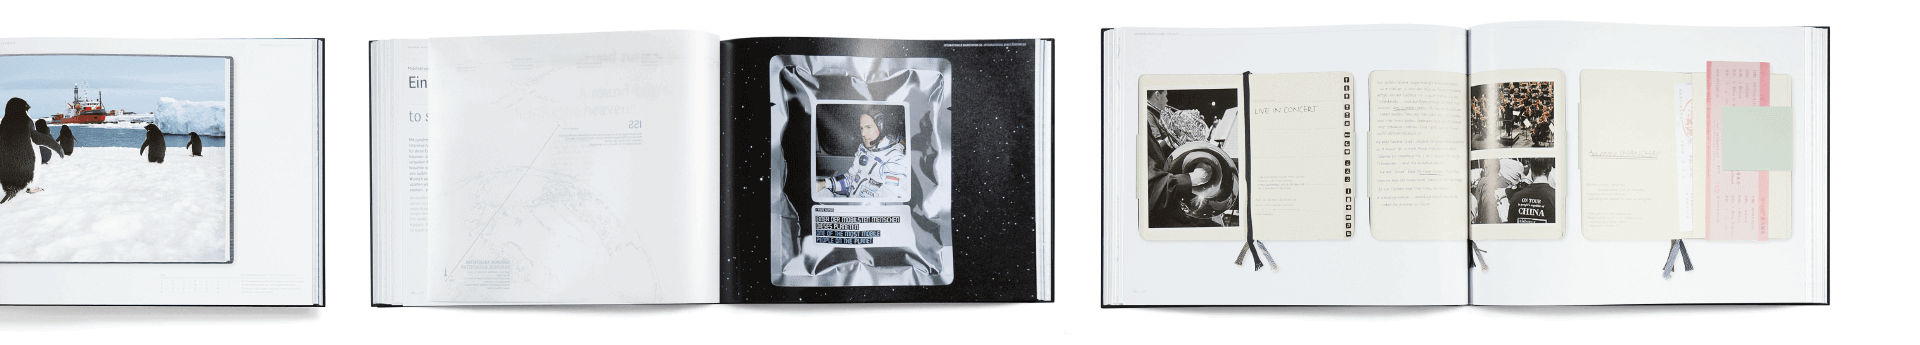 Innenseiten mit Fotgrafie von Pinguinen, einem Astronauten und Scanns aus Notizbüchern aus ThyssenKrupp Corporate Book Discover Steel